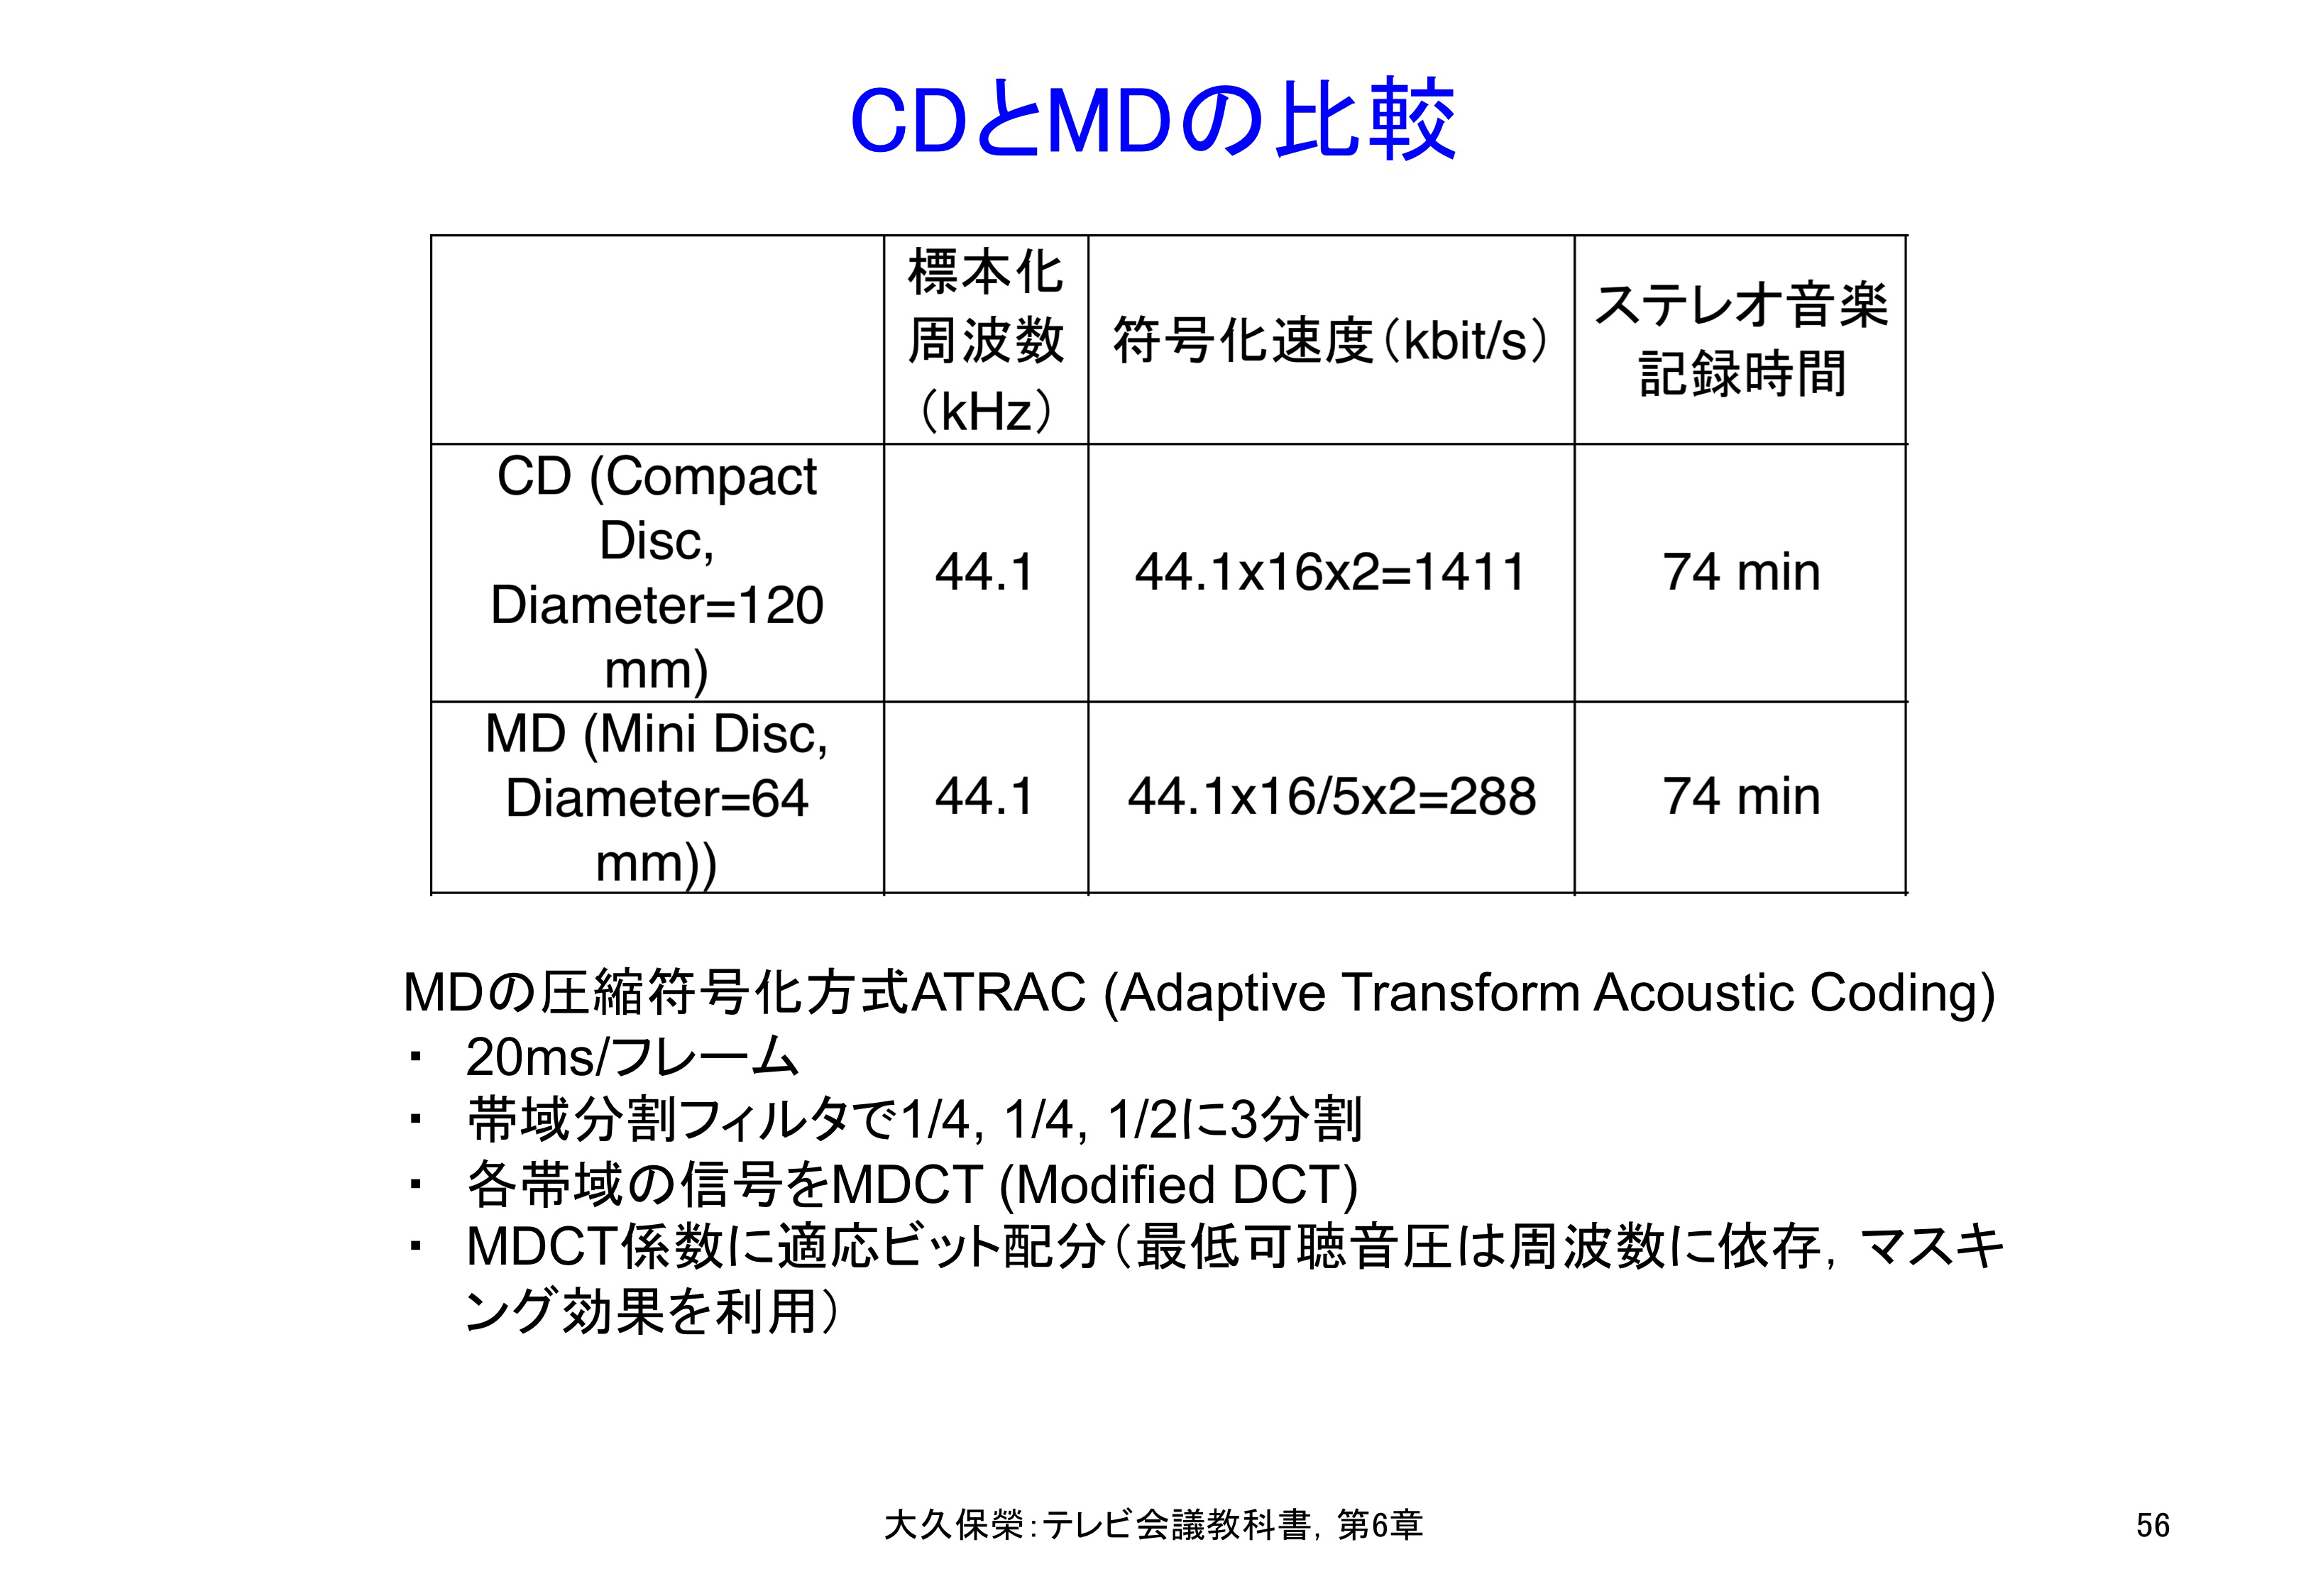 図C6-3 CDとMDの比較